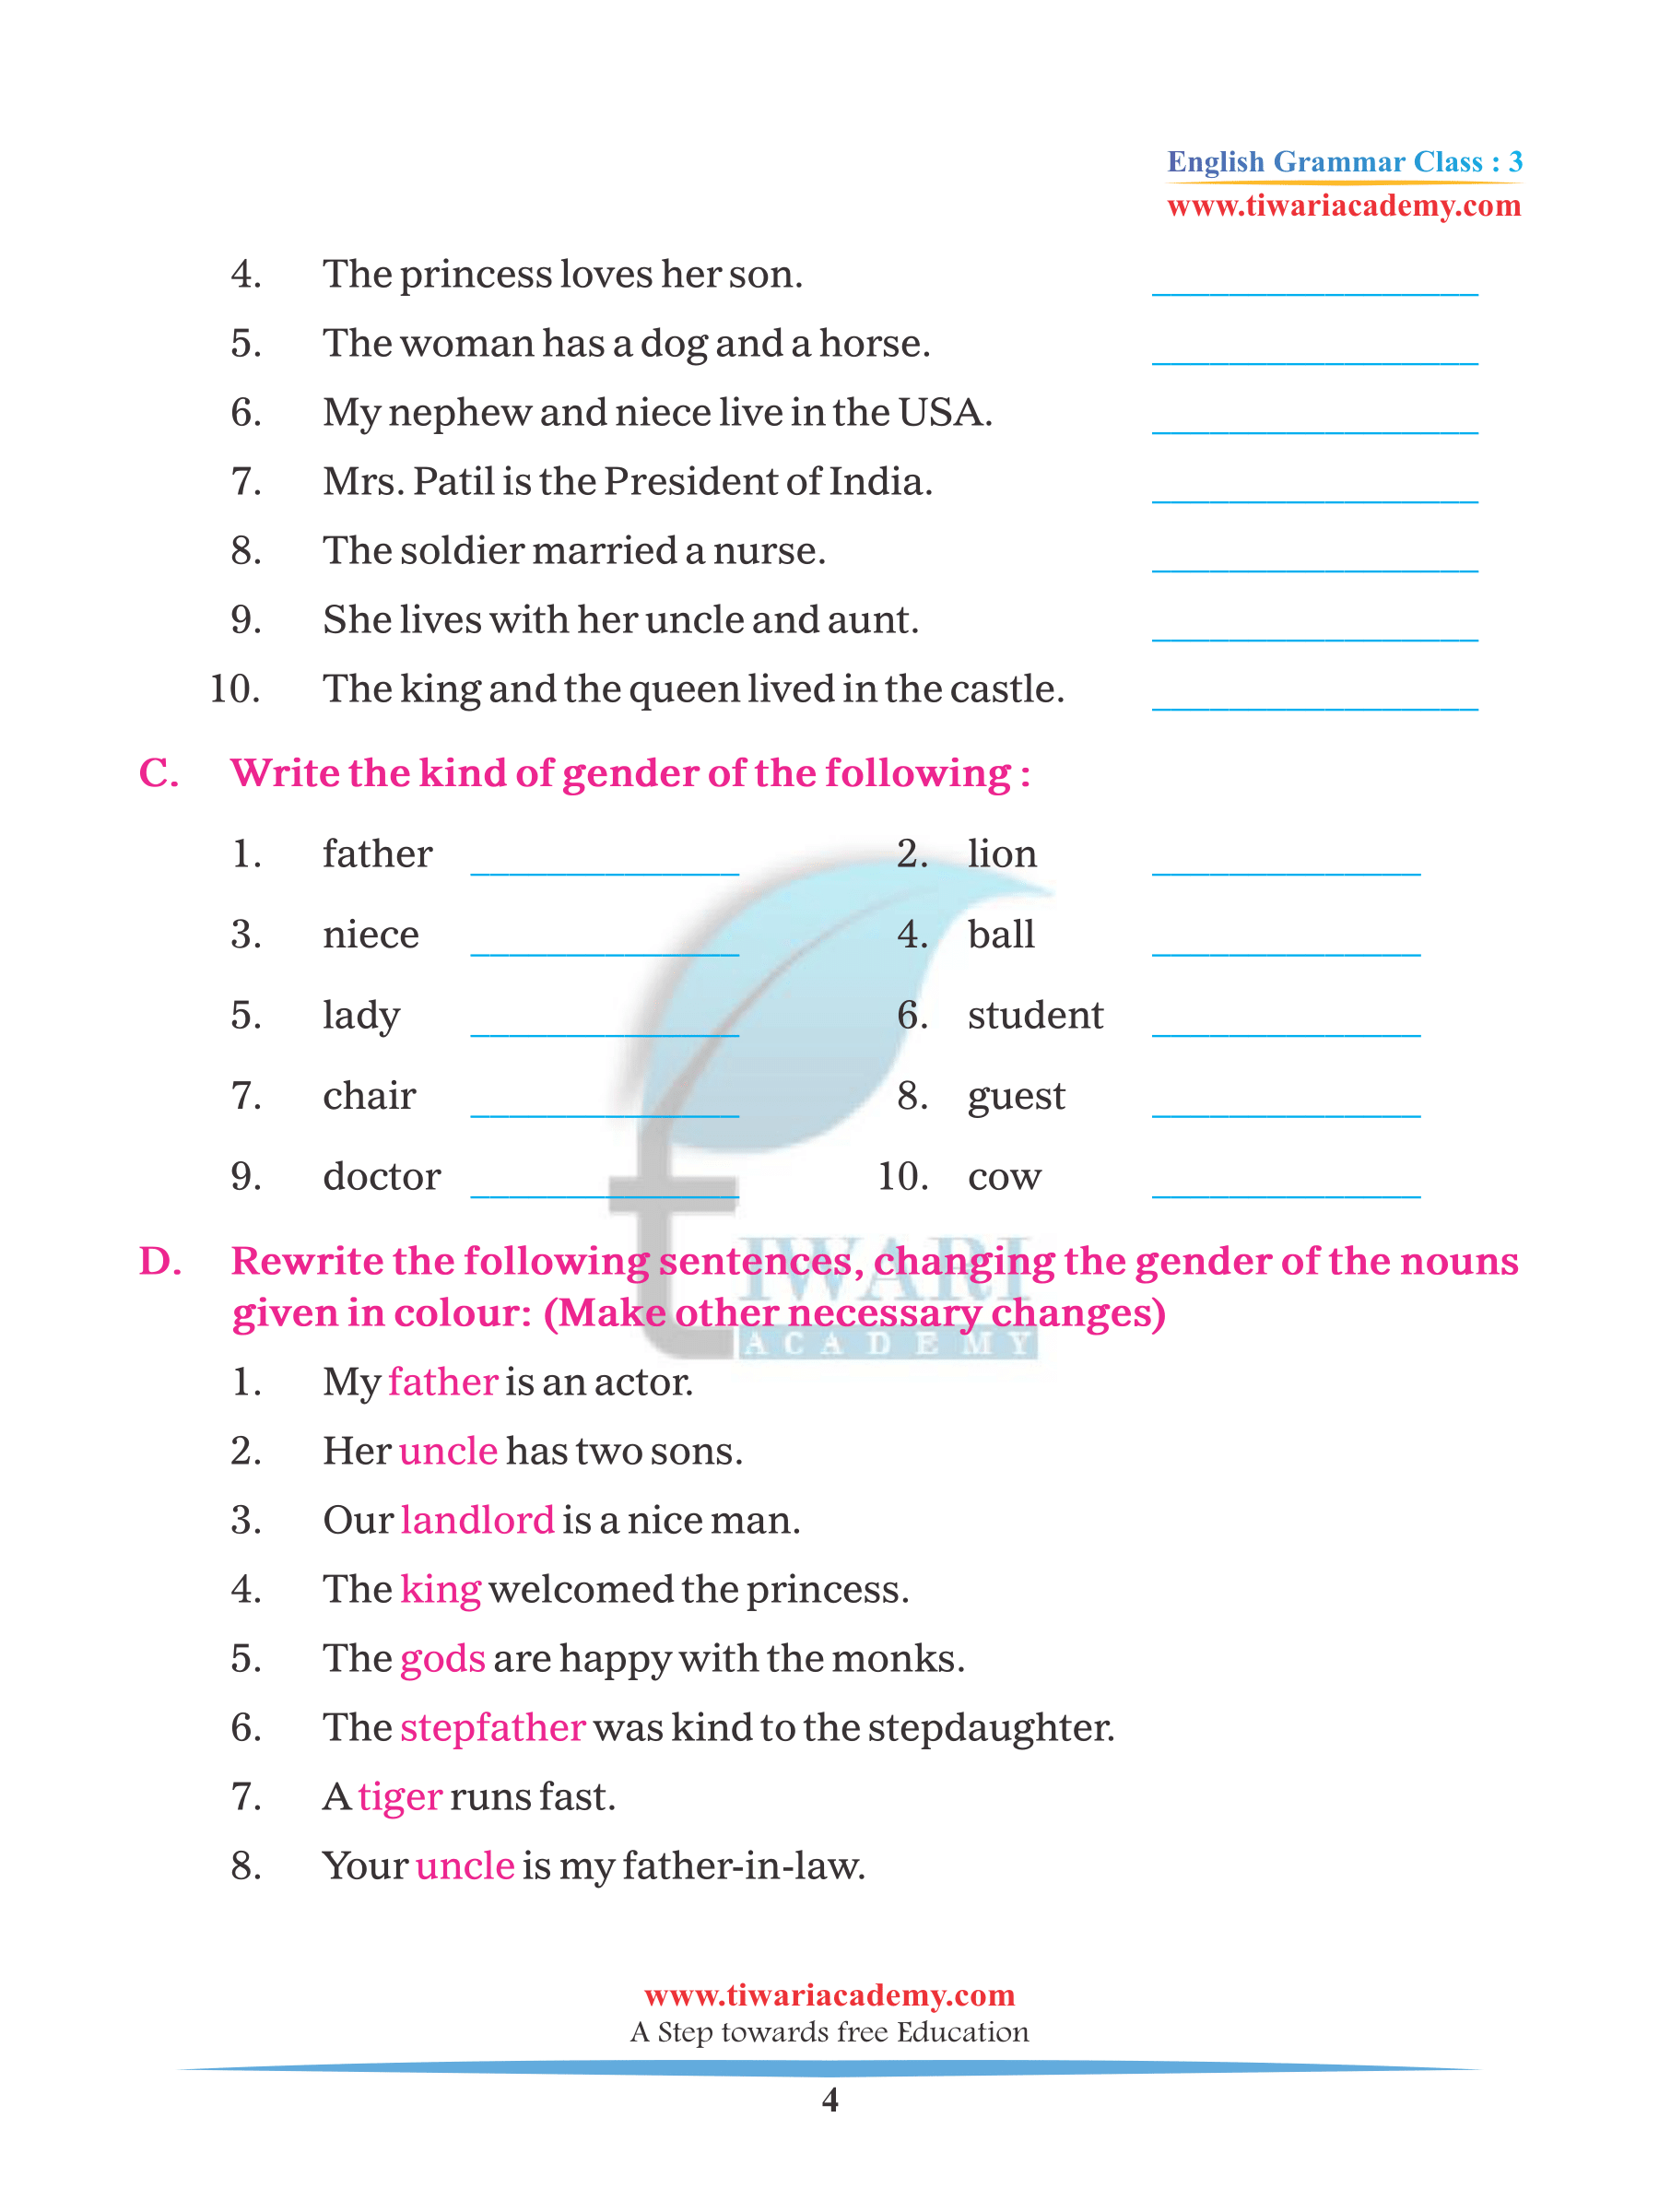 nouns-gender-people-worksheet-english-grammar-worksheets-gender-in-english-english-grammar